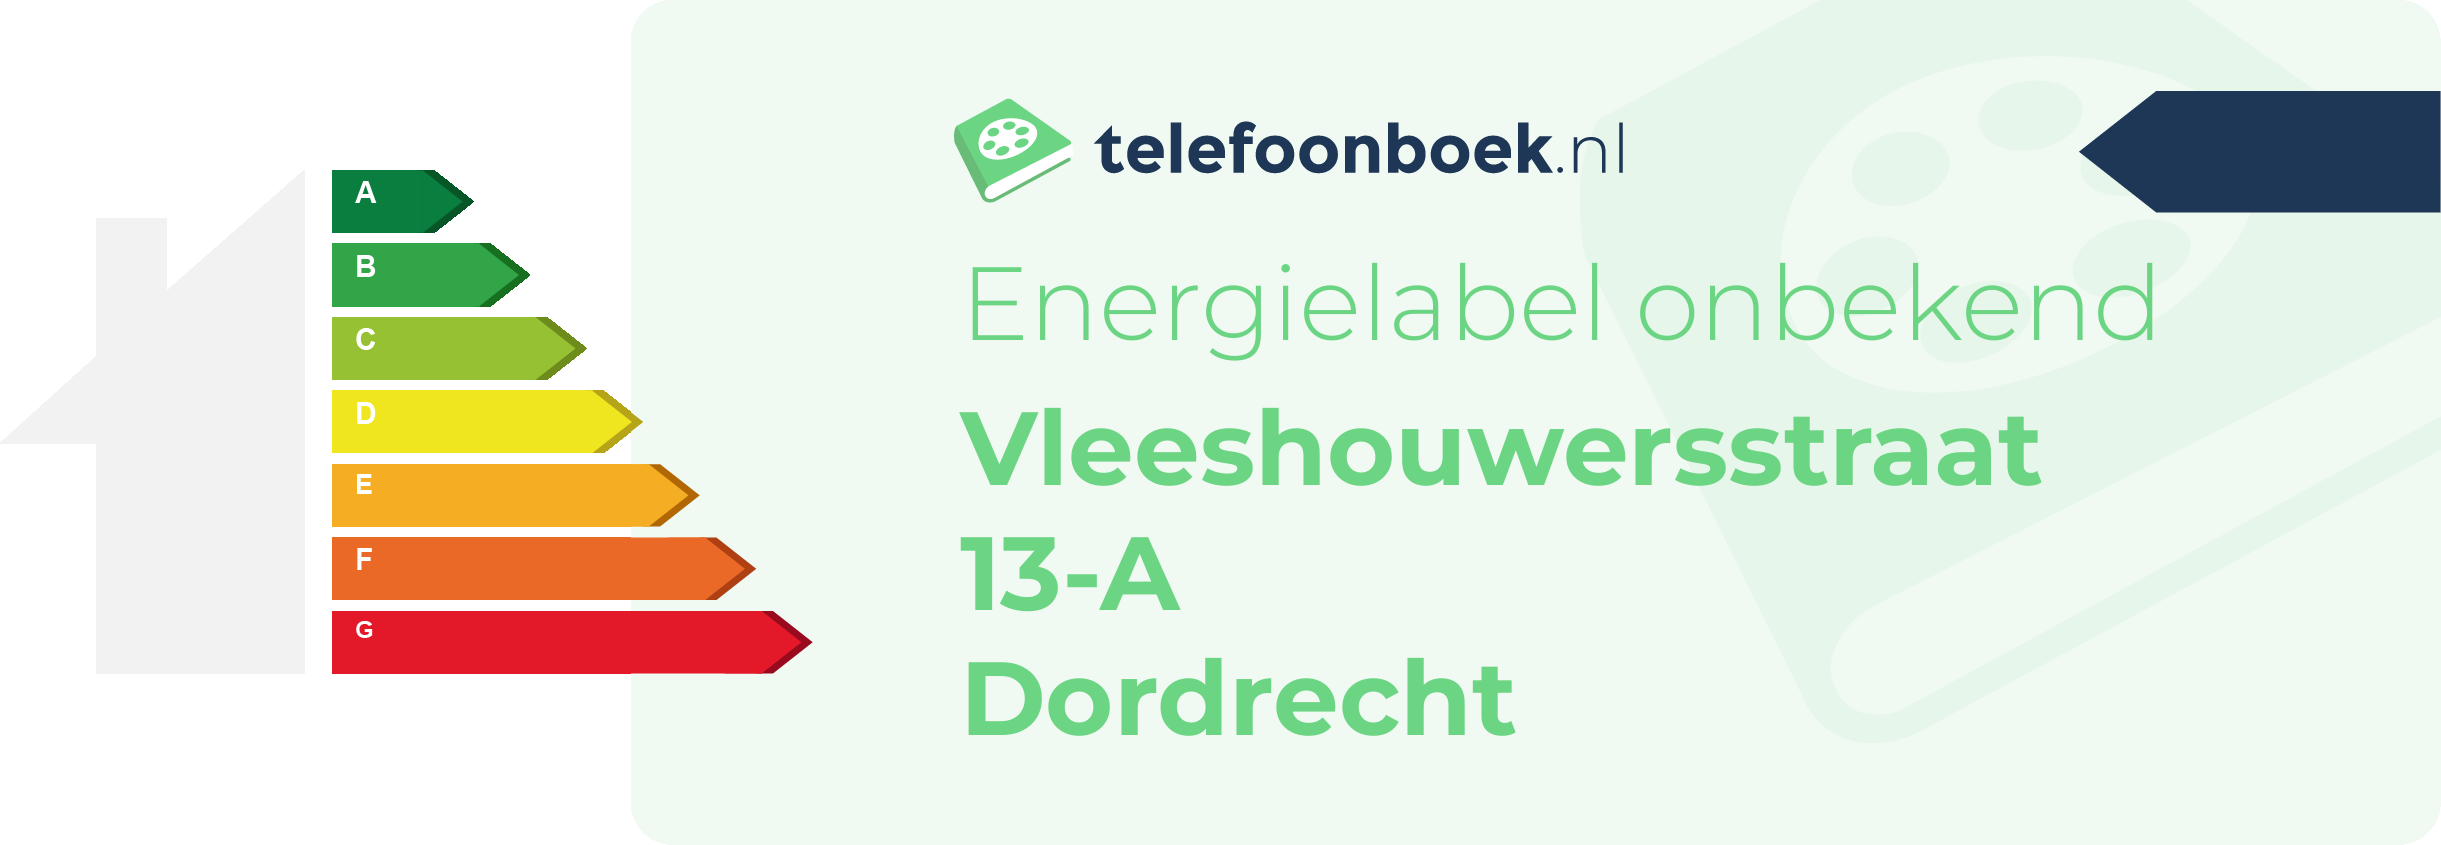 Energielabel Vleeshouwersstraat 13-A Dordrecht